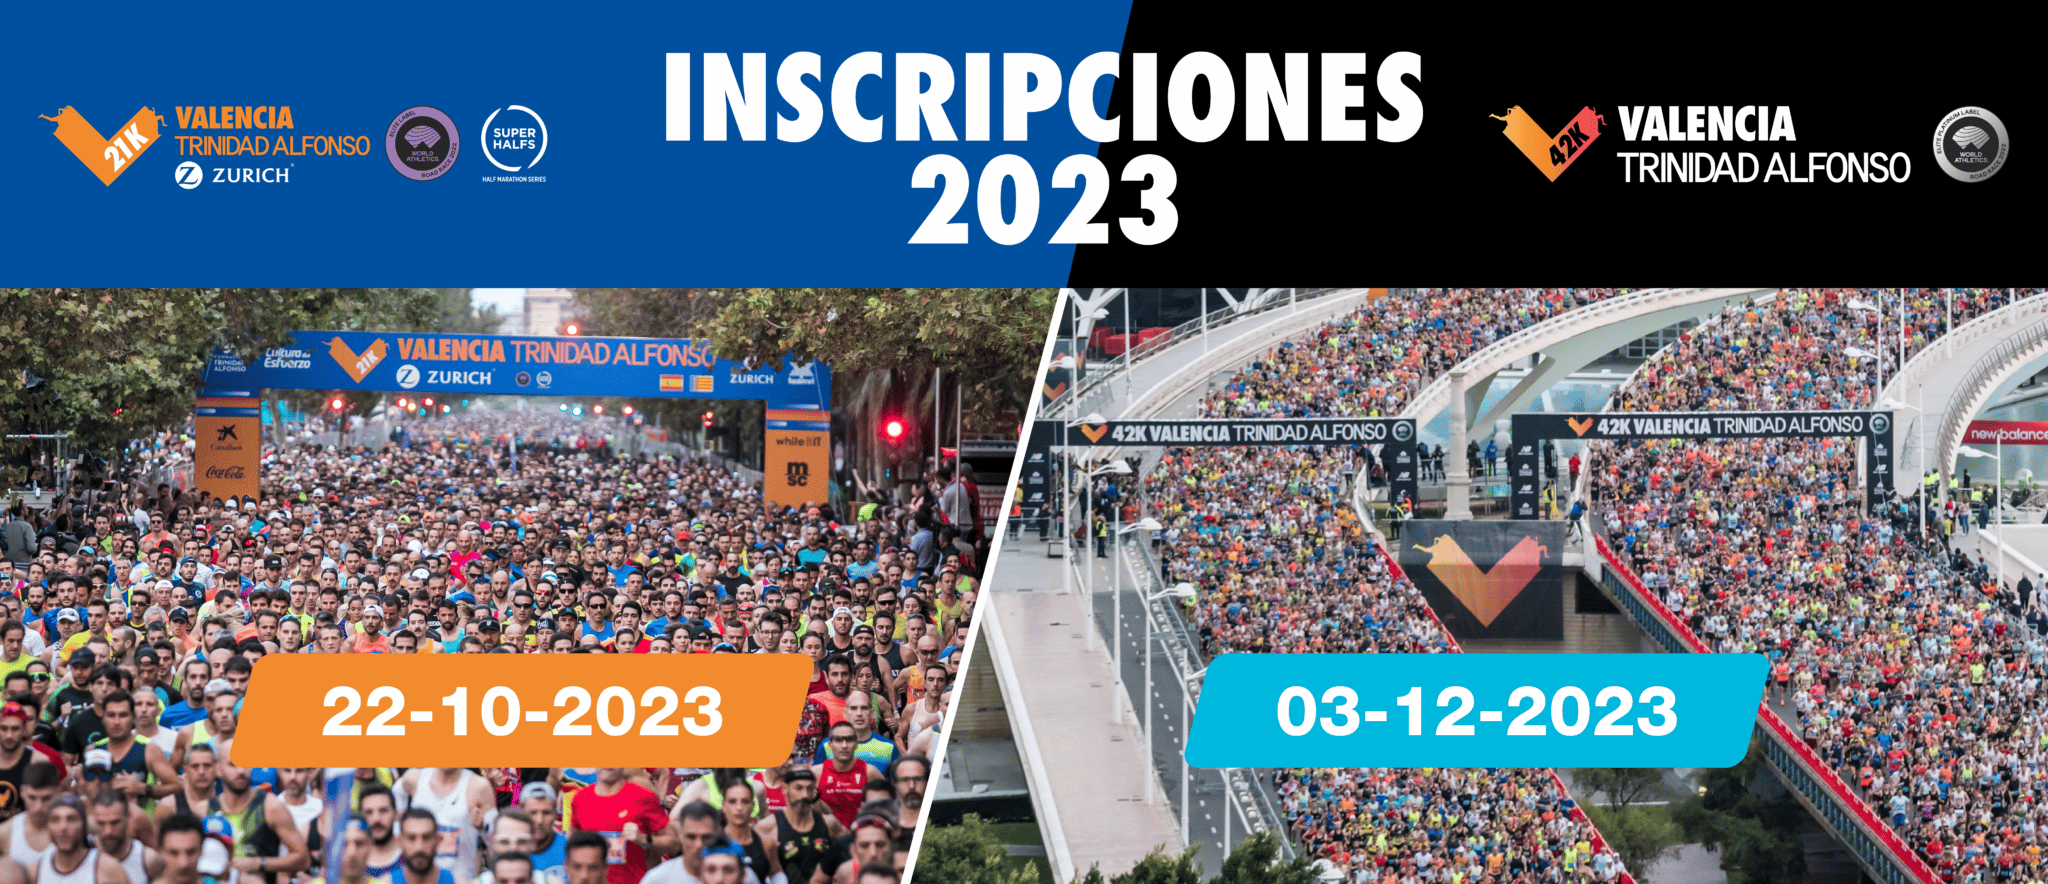 Rubí Ejecutante Pertenecer a Inscripciones Medio y Maratón Valencia 2023